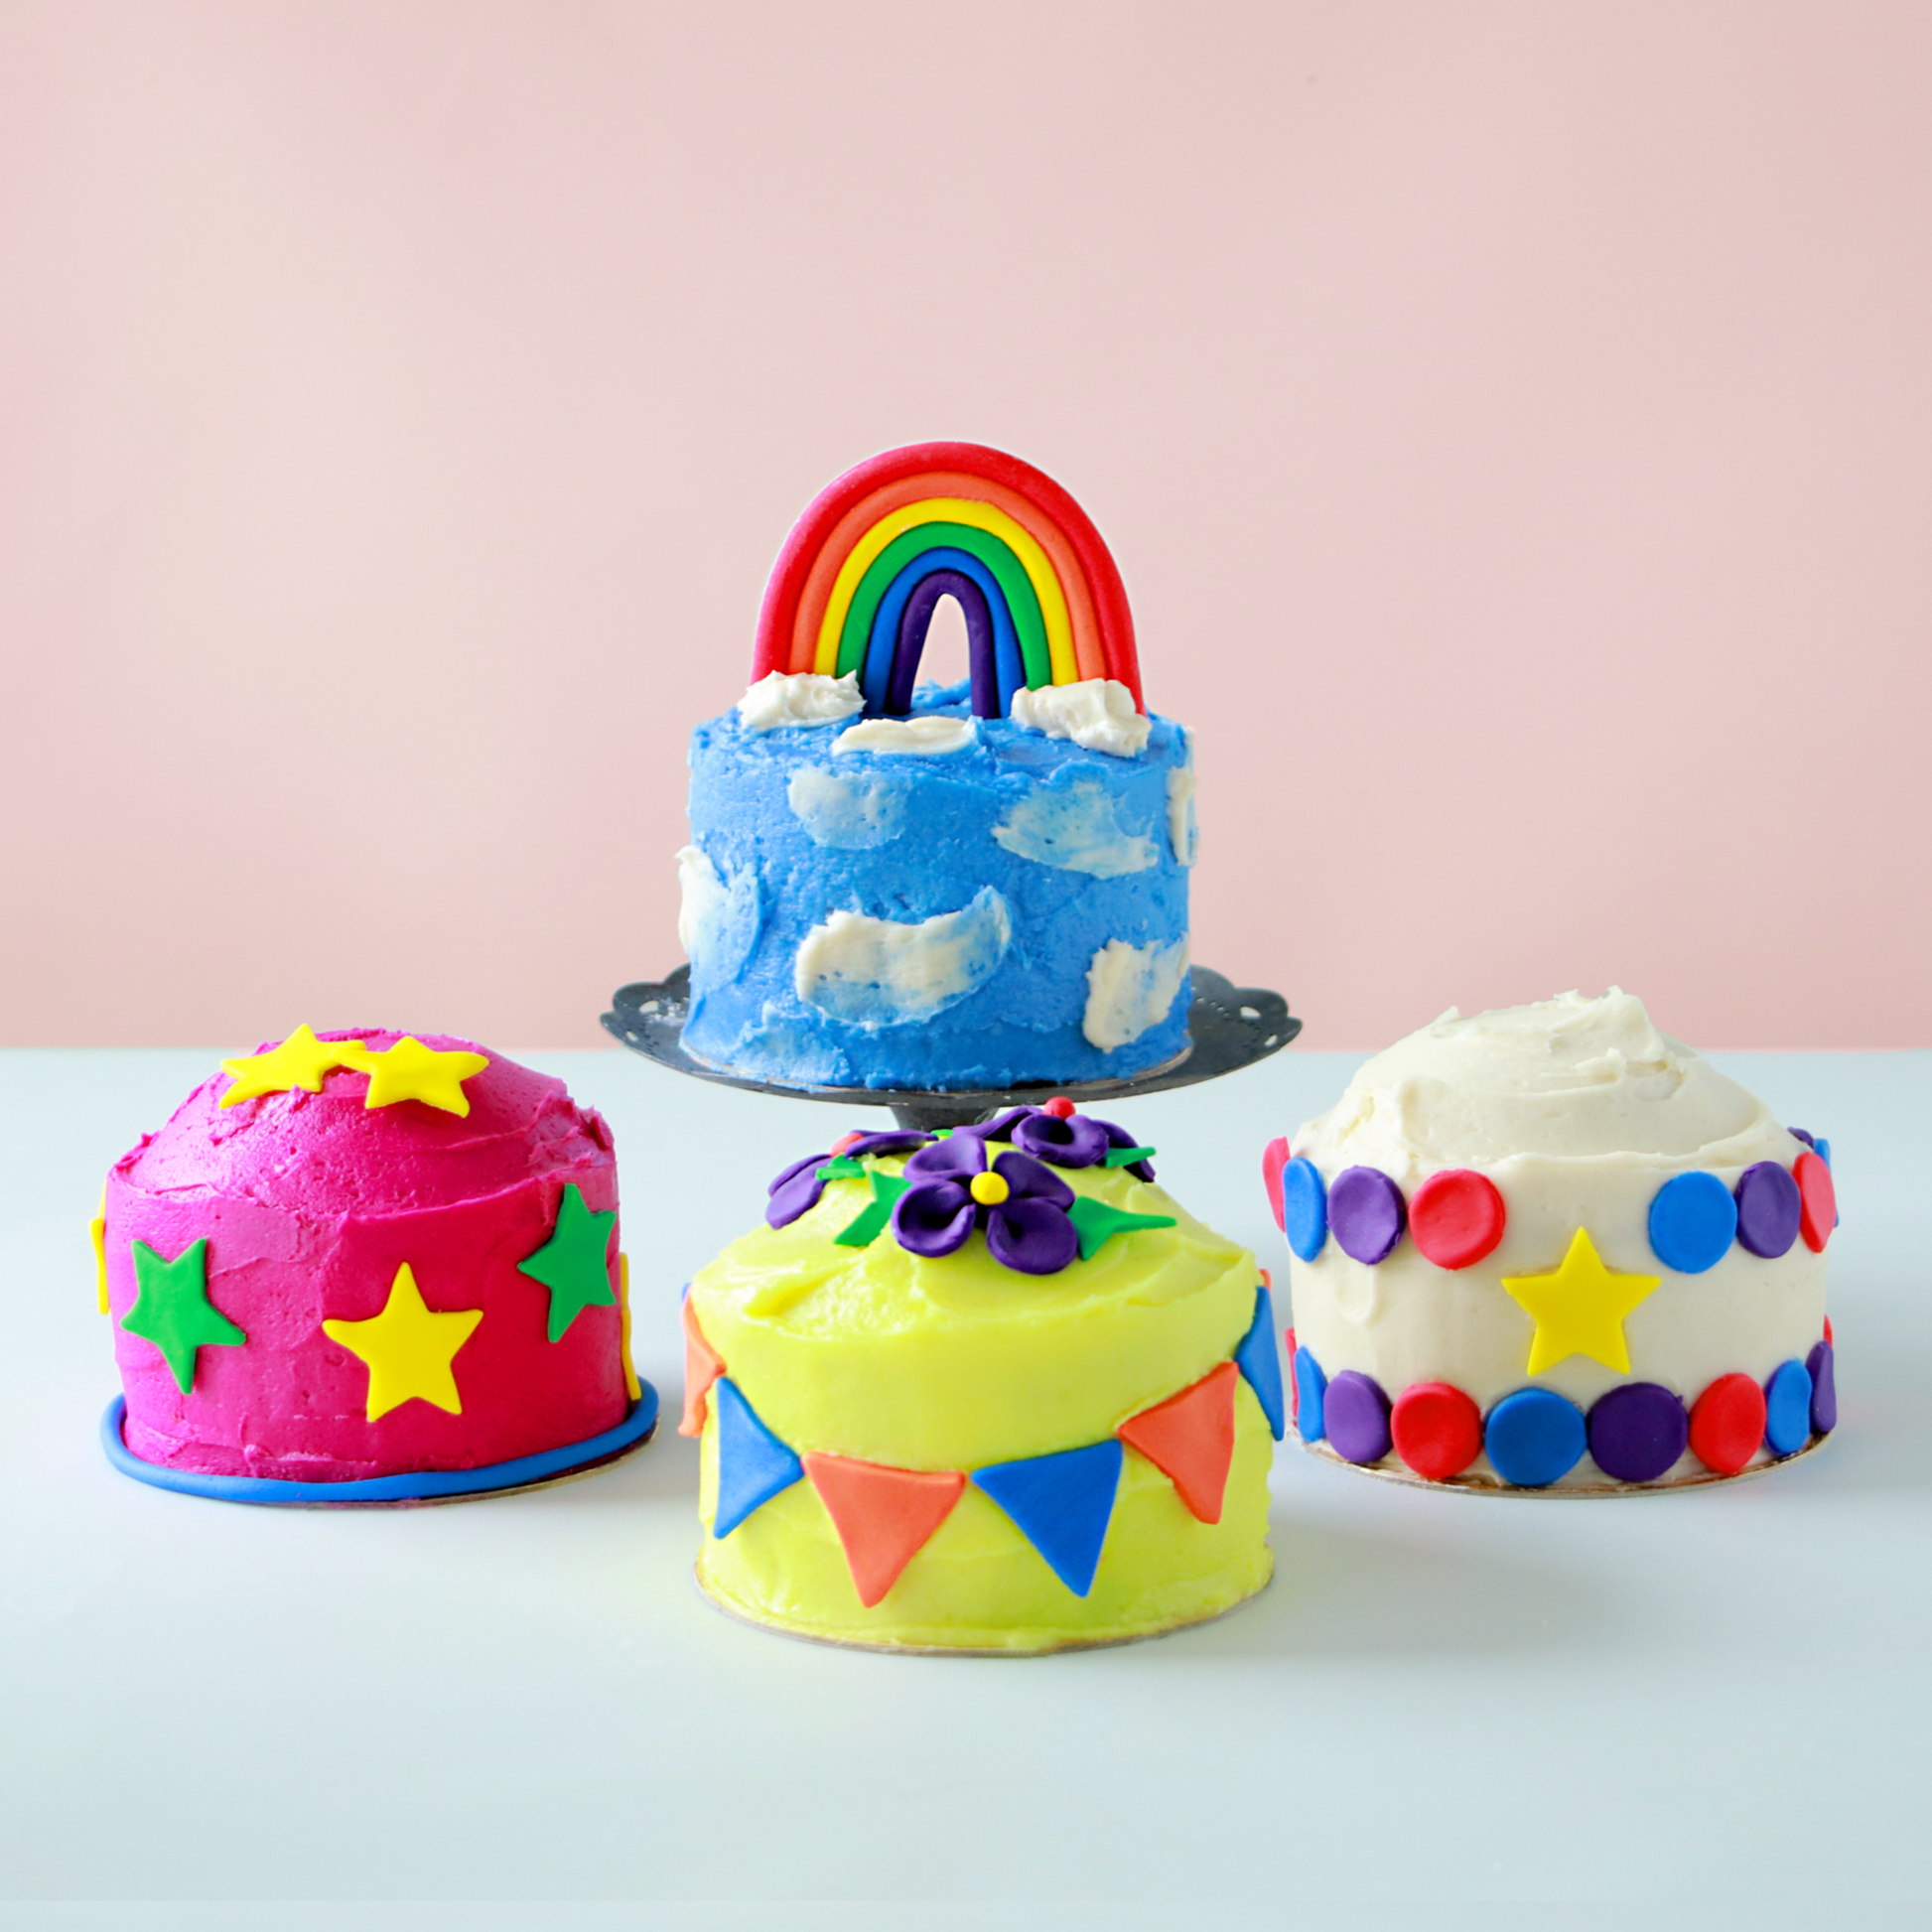 Mini Cake Baking Kit - Fondant Decorations & Food Coloring ...